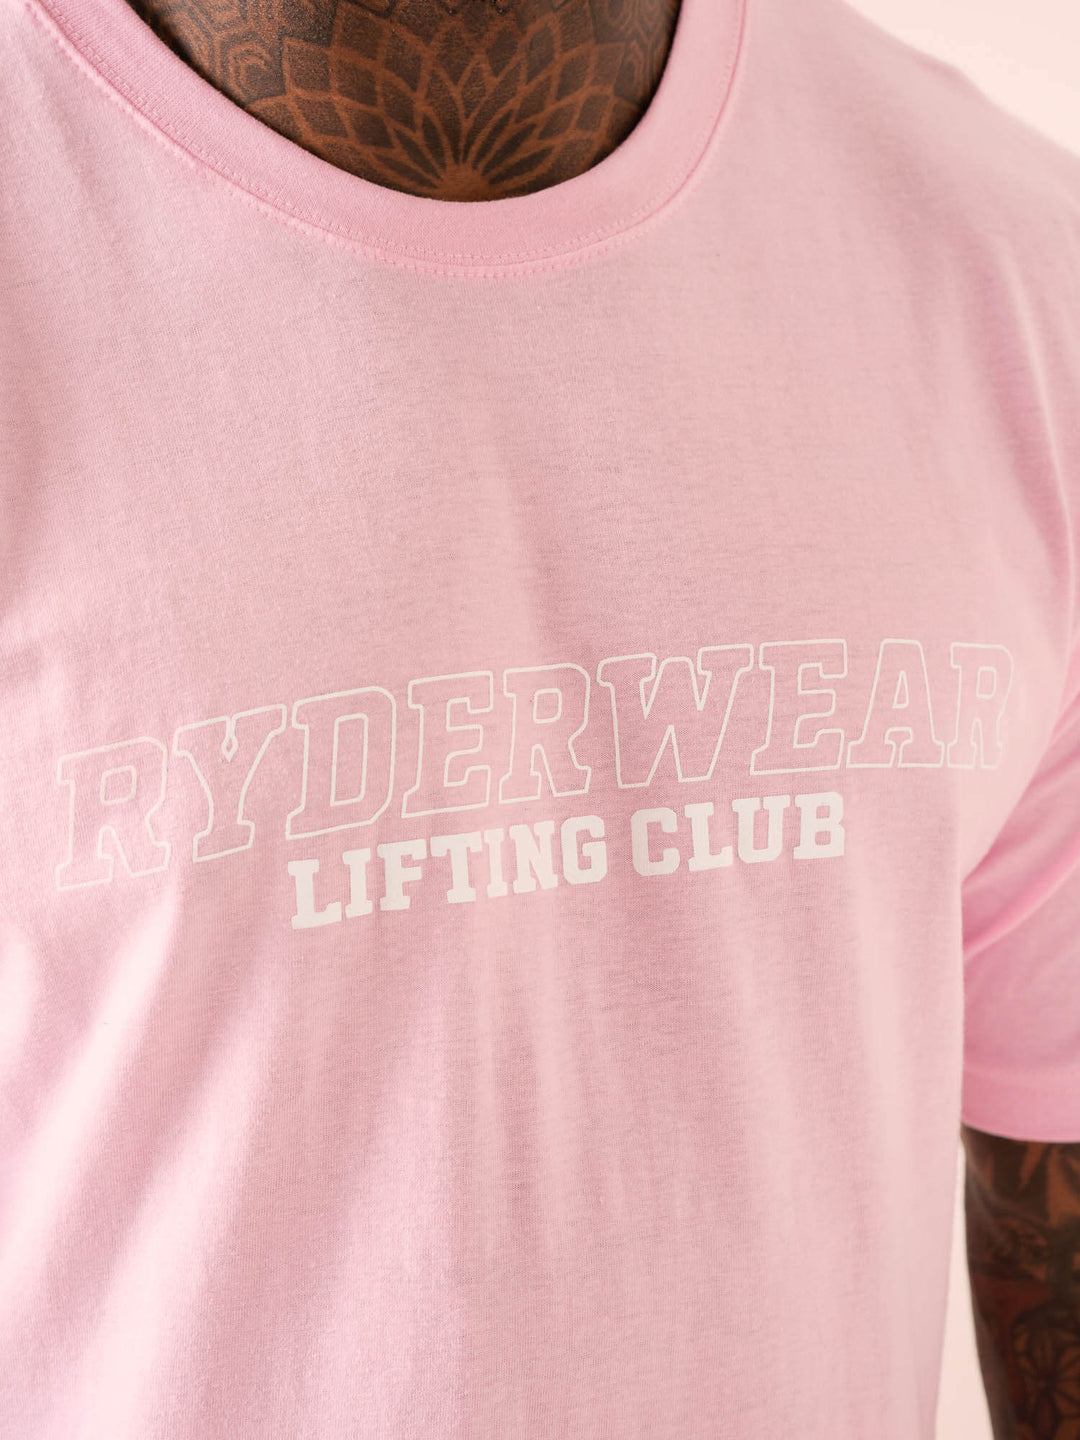 Lifting Club T-Shirt - Pink Clothing Ryderwear 